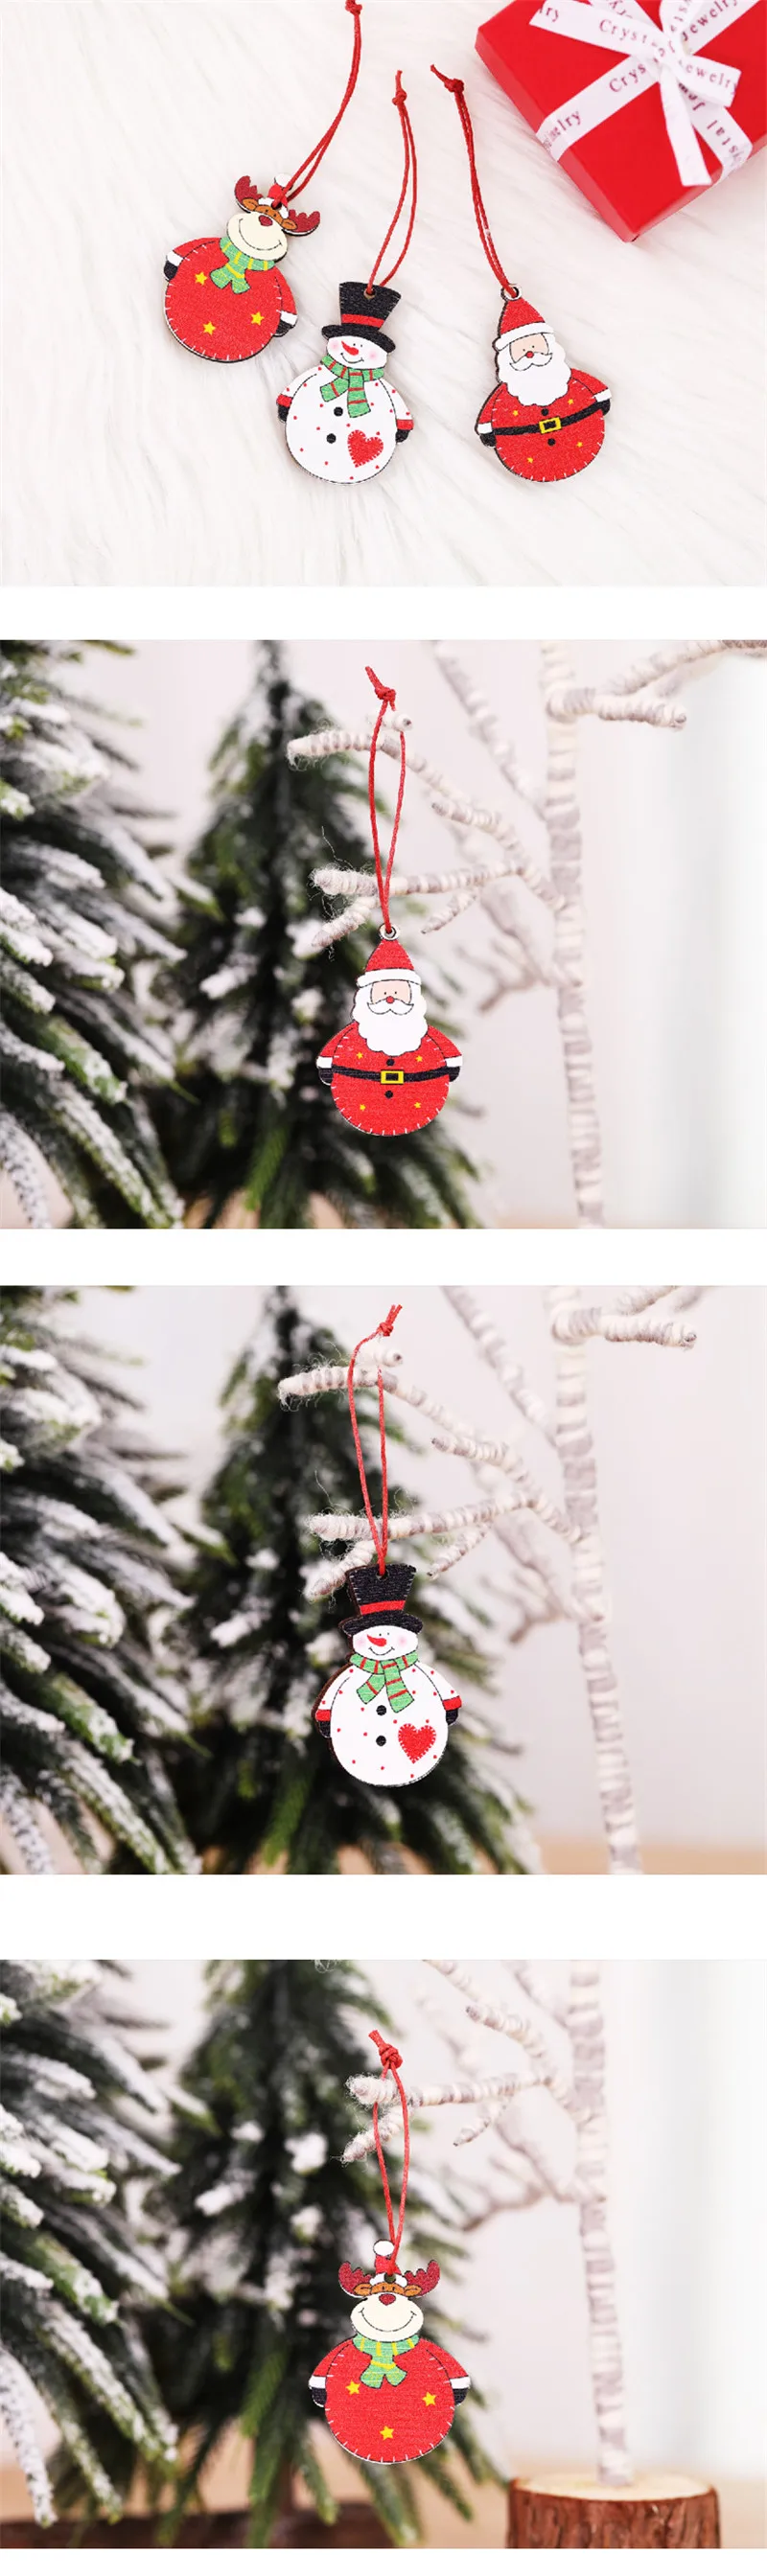 Xmas год елочных игрушек деревянный кулон гирлянда Рождественские Санта Клаус украшение "Лось" для дома Noel с утолщённой меховой опушкой, Q